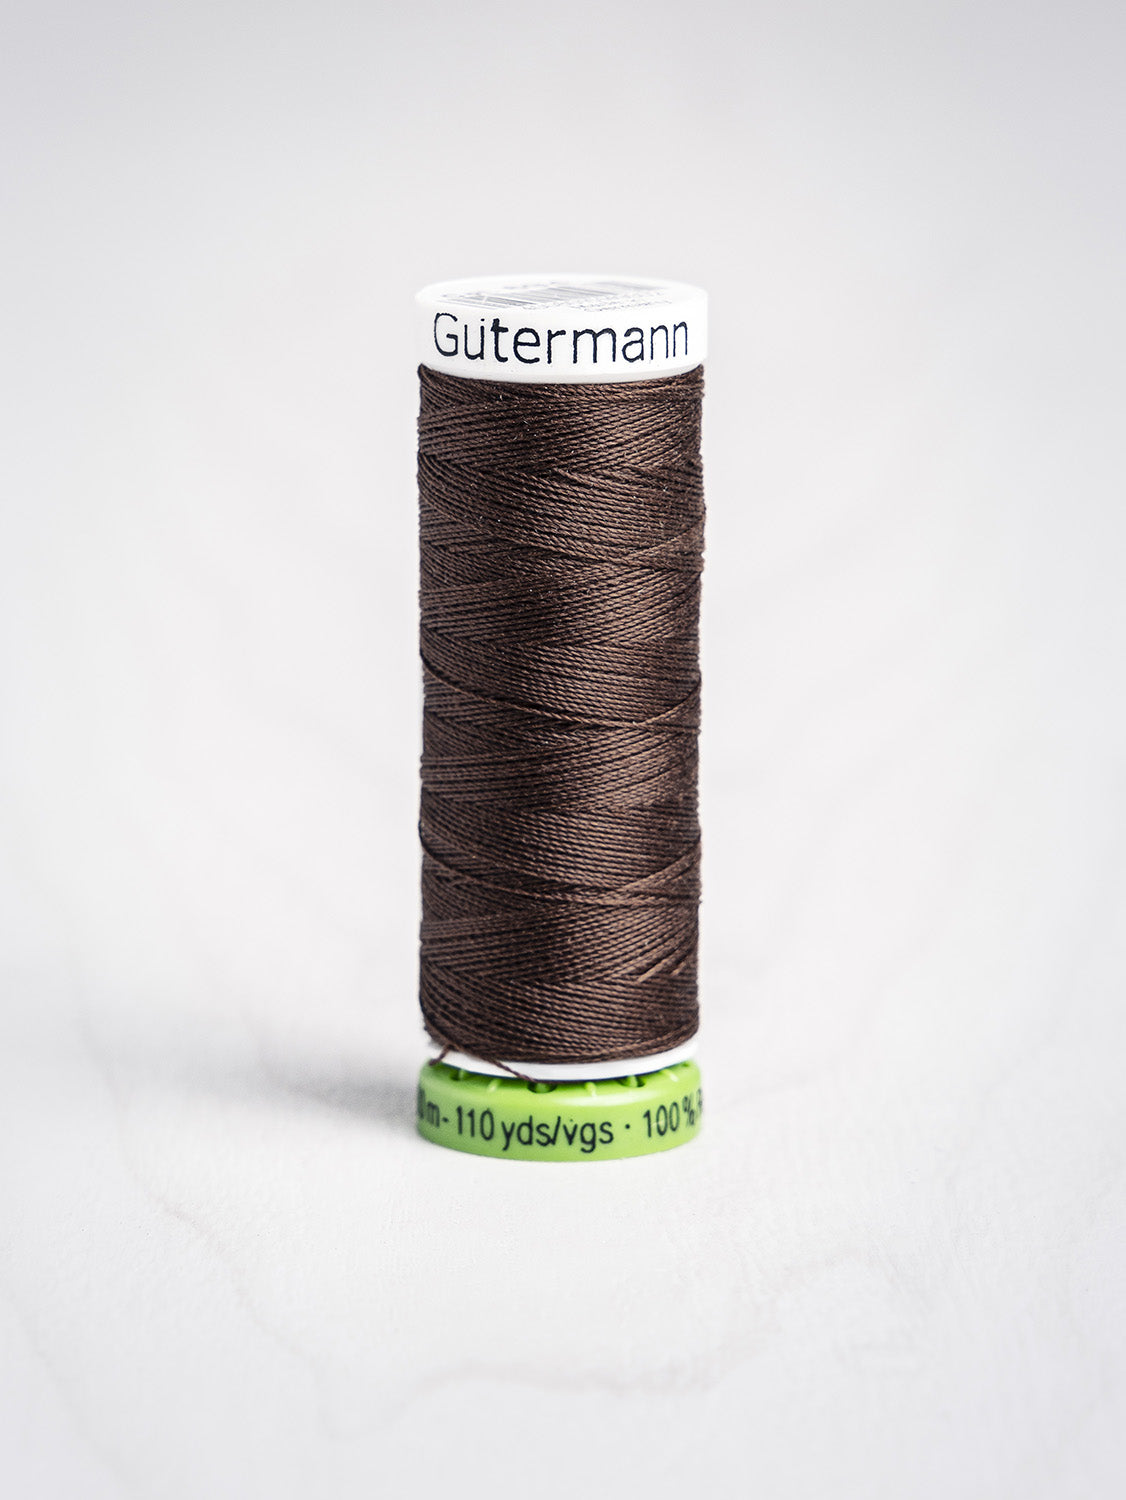 Gütermann All Purpose rPET Recycled Thread - Very Dark Brown 694